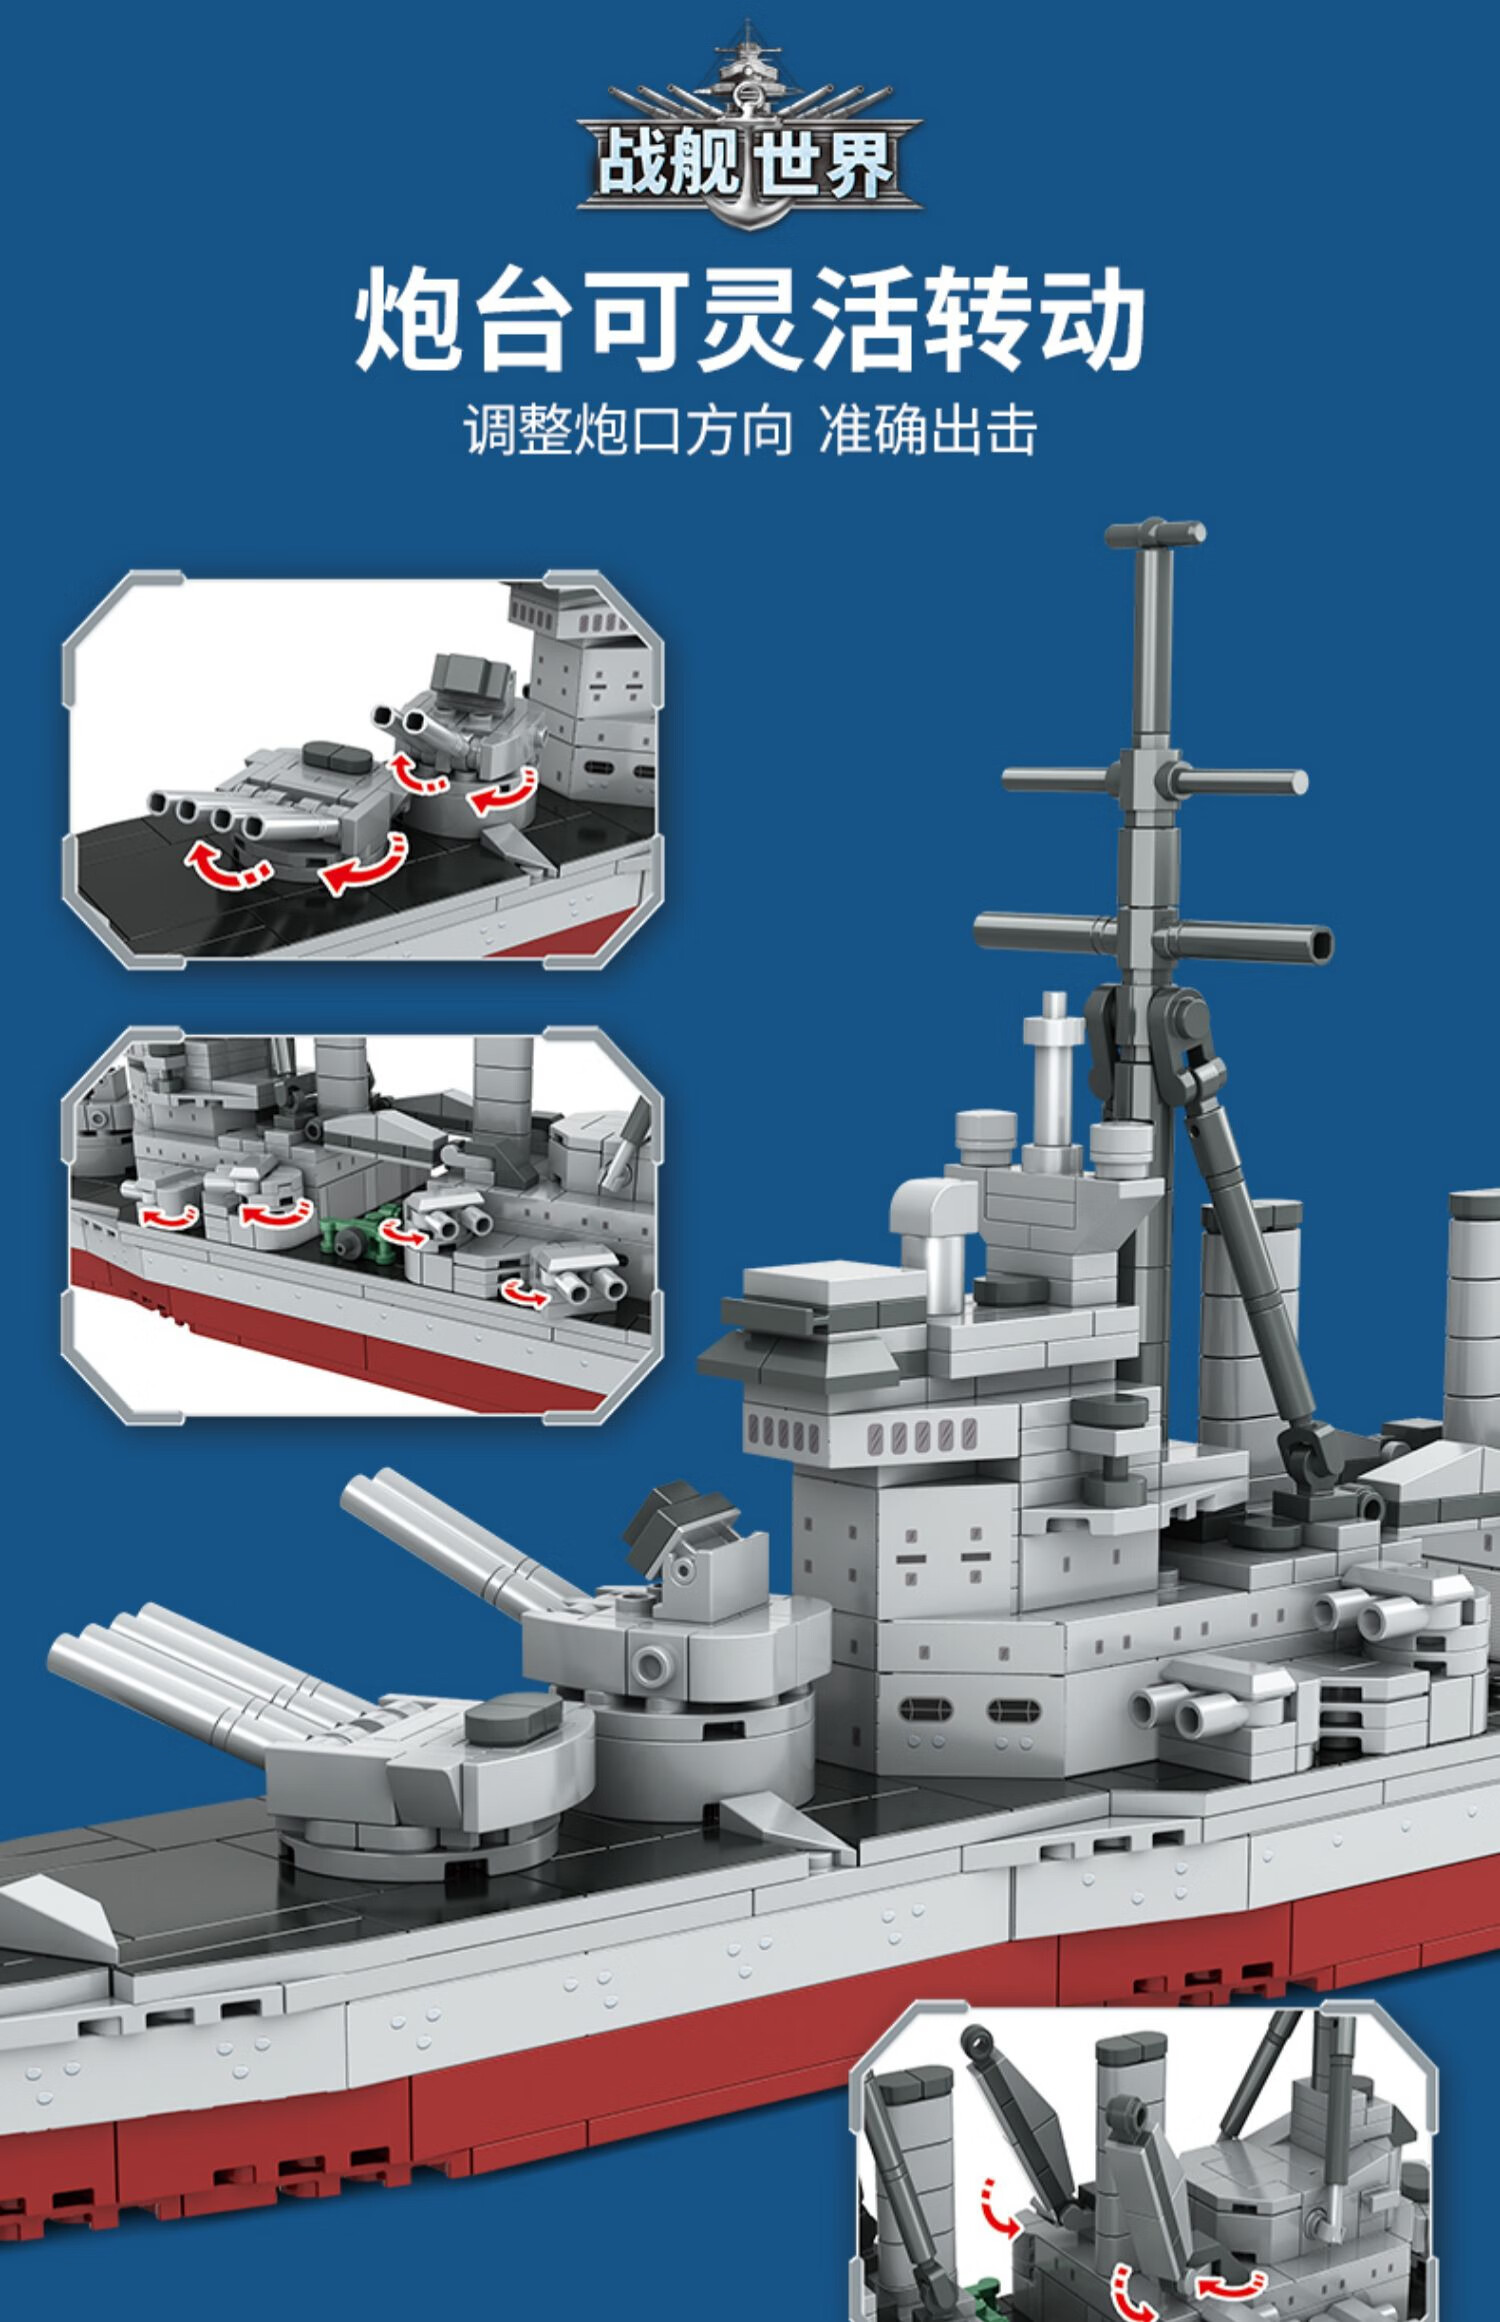 乐高皇家海军图片